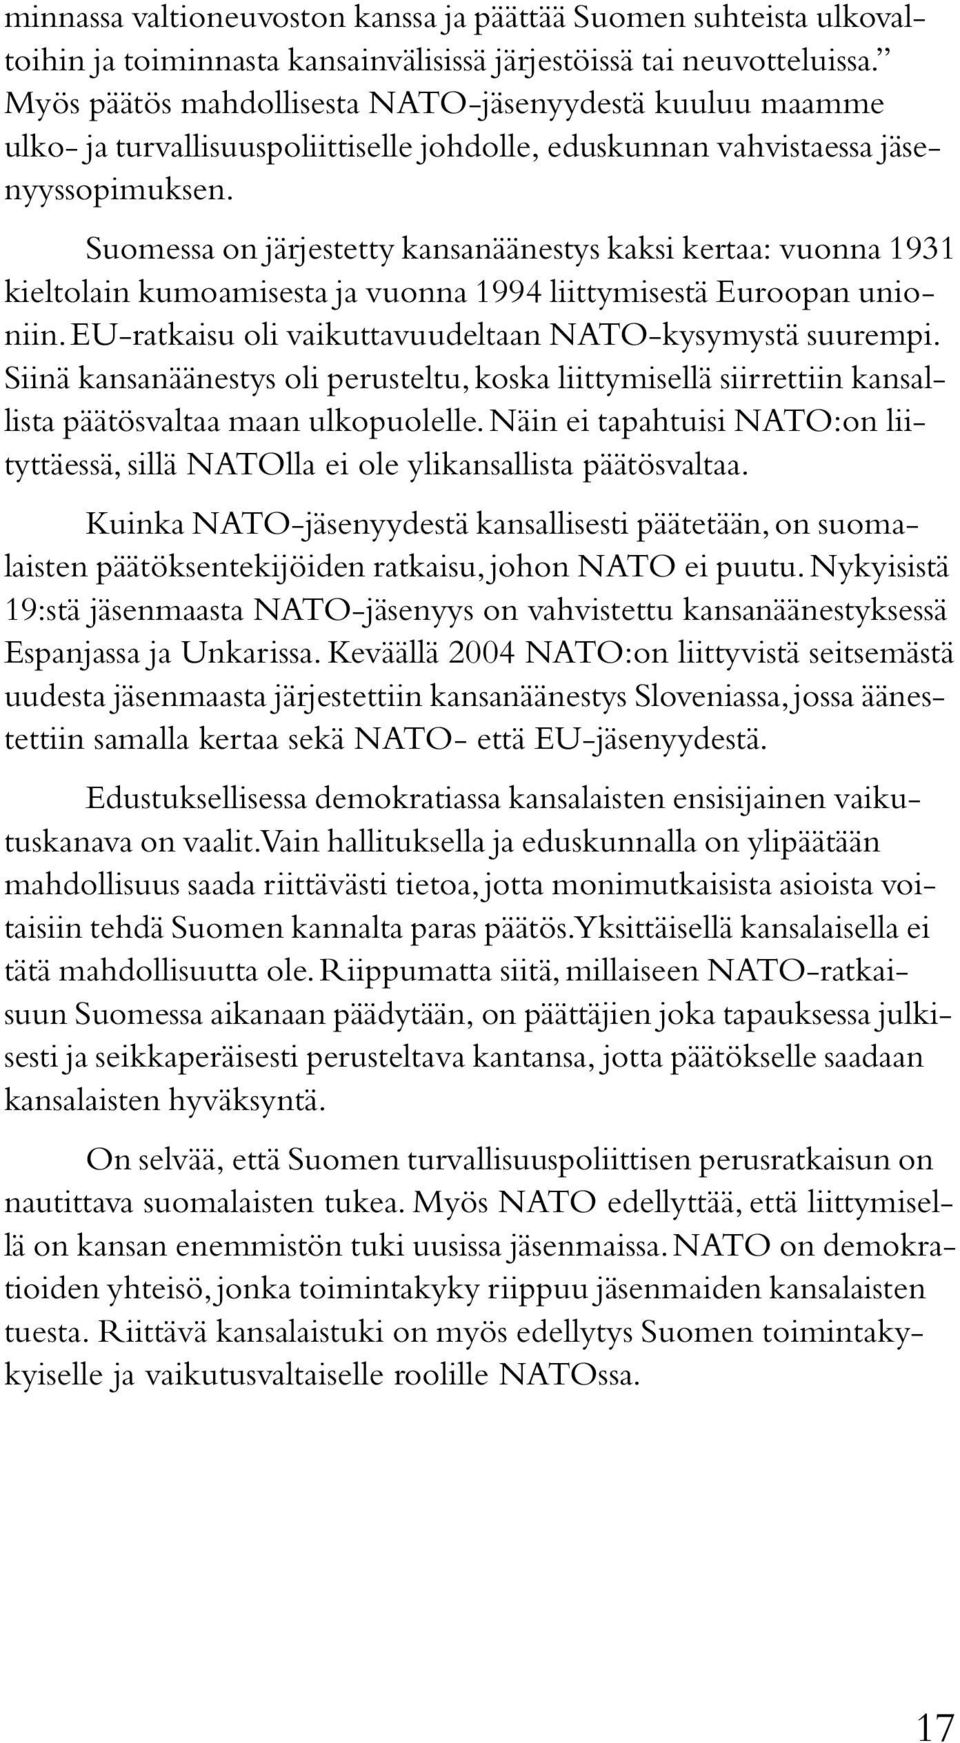 Suomessa on järjestetty kansanäänestys kaksi kertaa: vuonna 1931 kieltolain kumoamisesta ja vuonna 1994 liittymisestä Euroopan unioniin. EU-ratkaisu oli vaikuttavuudeltaan NATO-kysymystä suurempi.